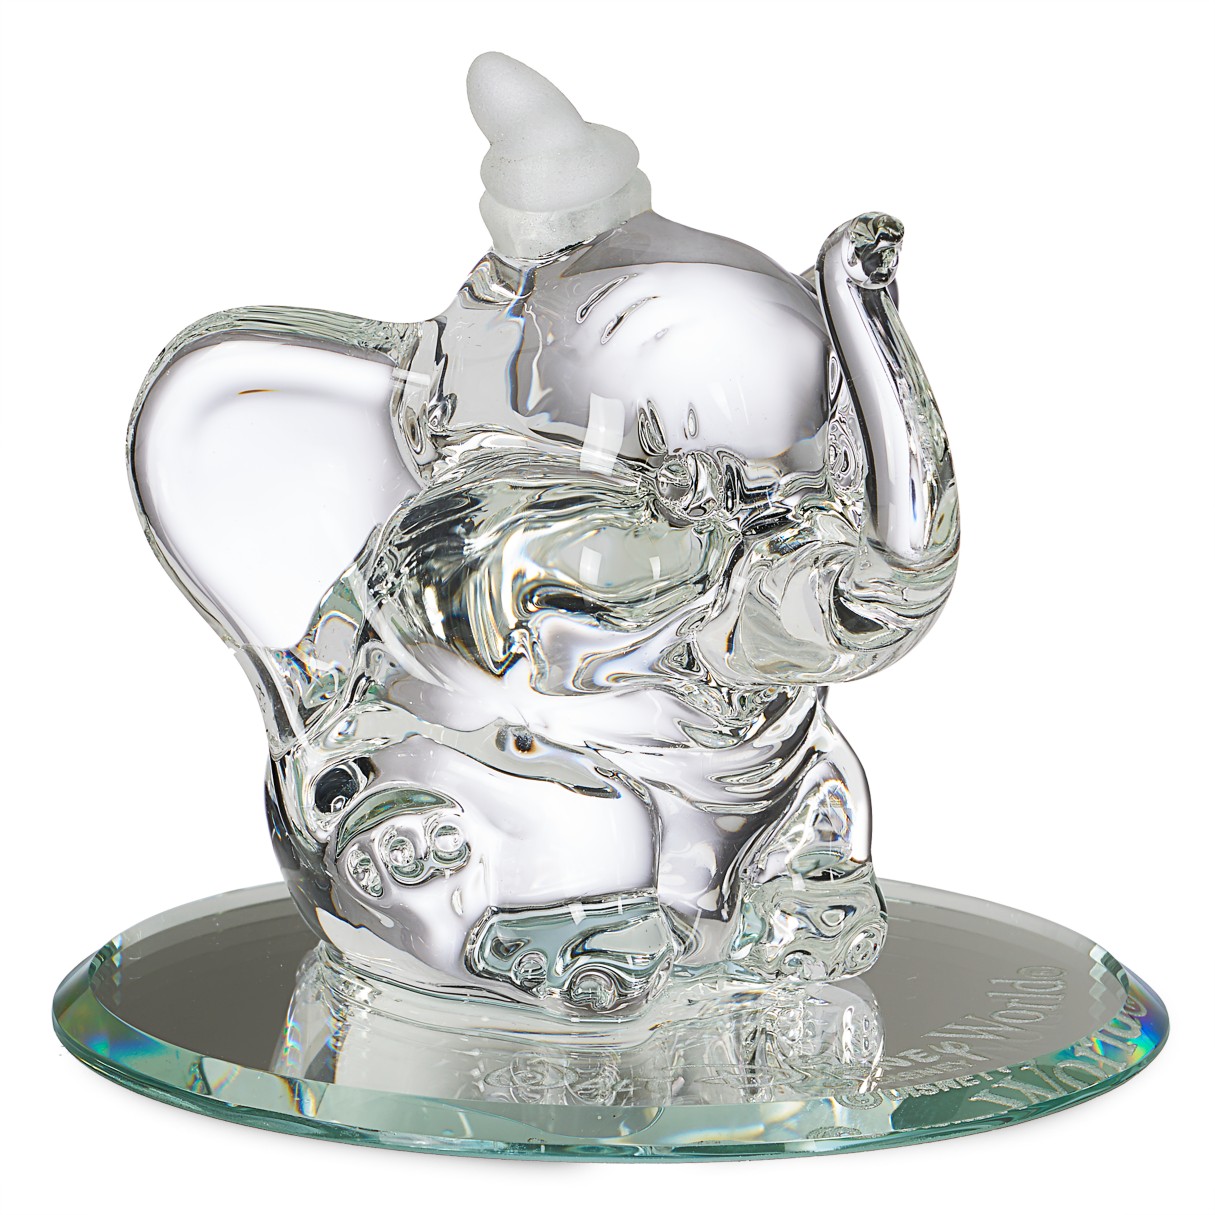 Dumbo Glass Figurine by Arribas – Walt Disney World